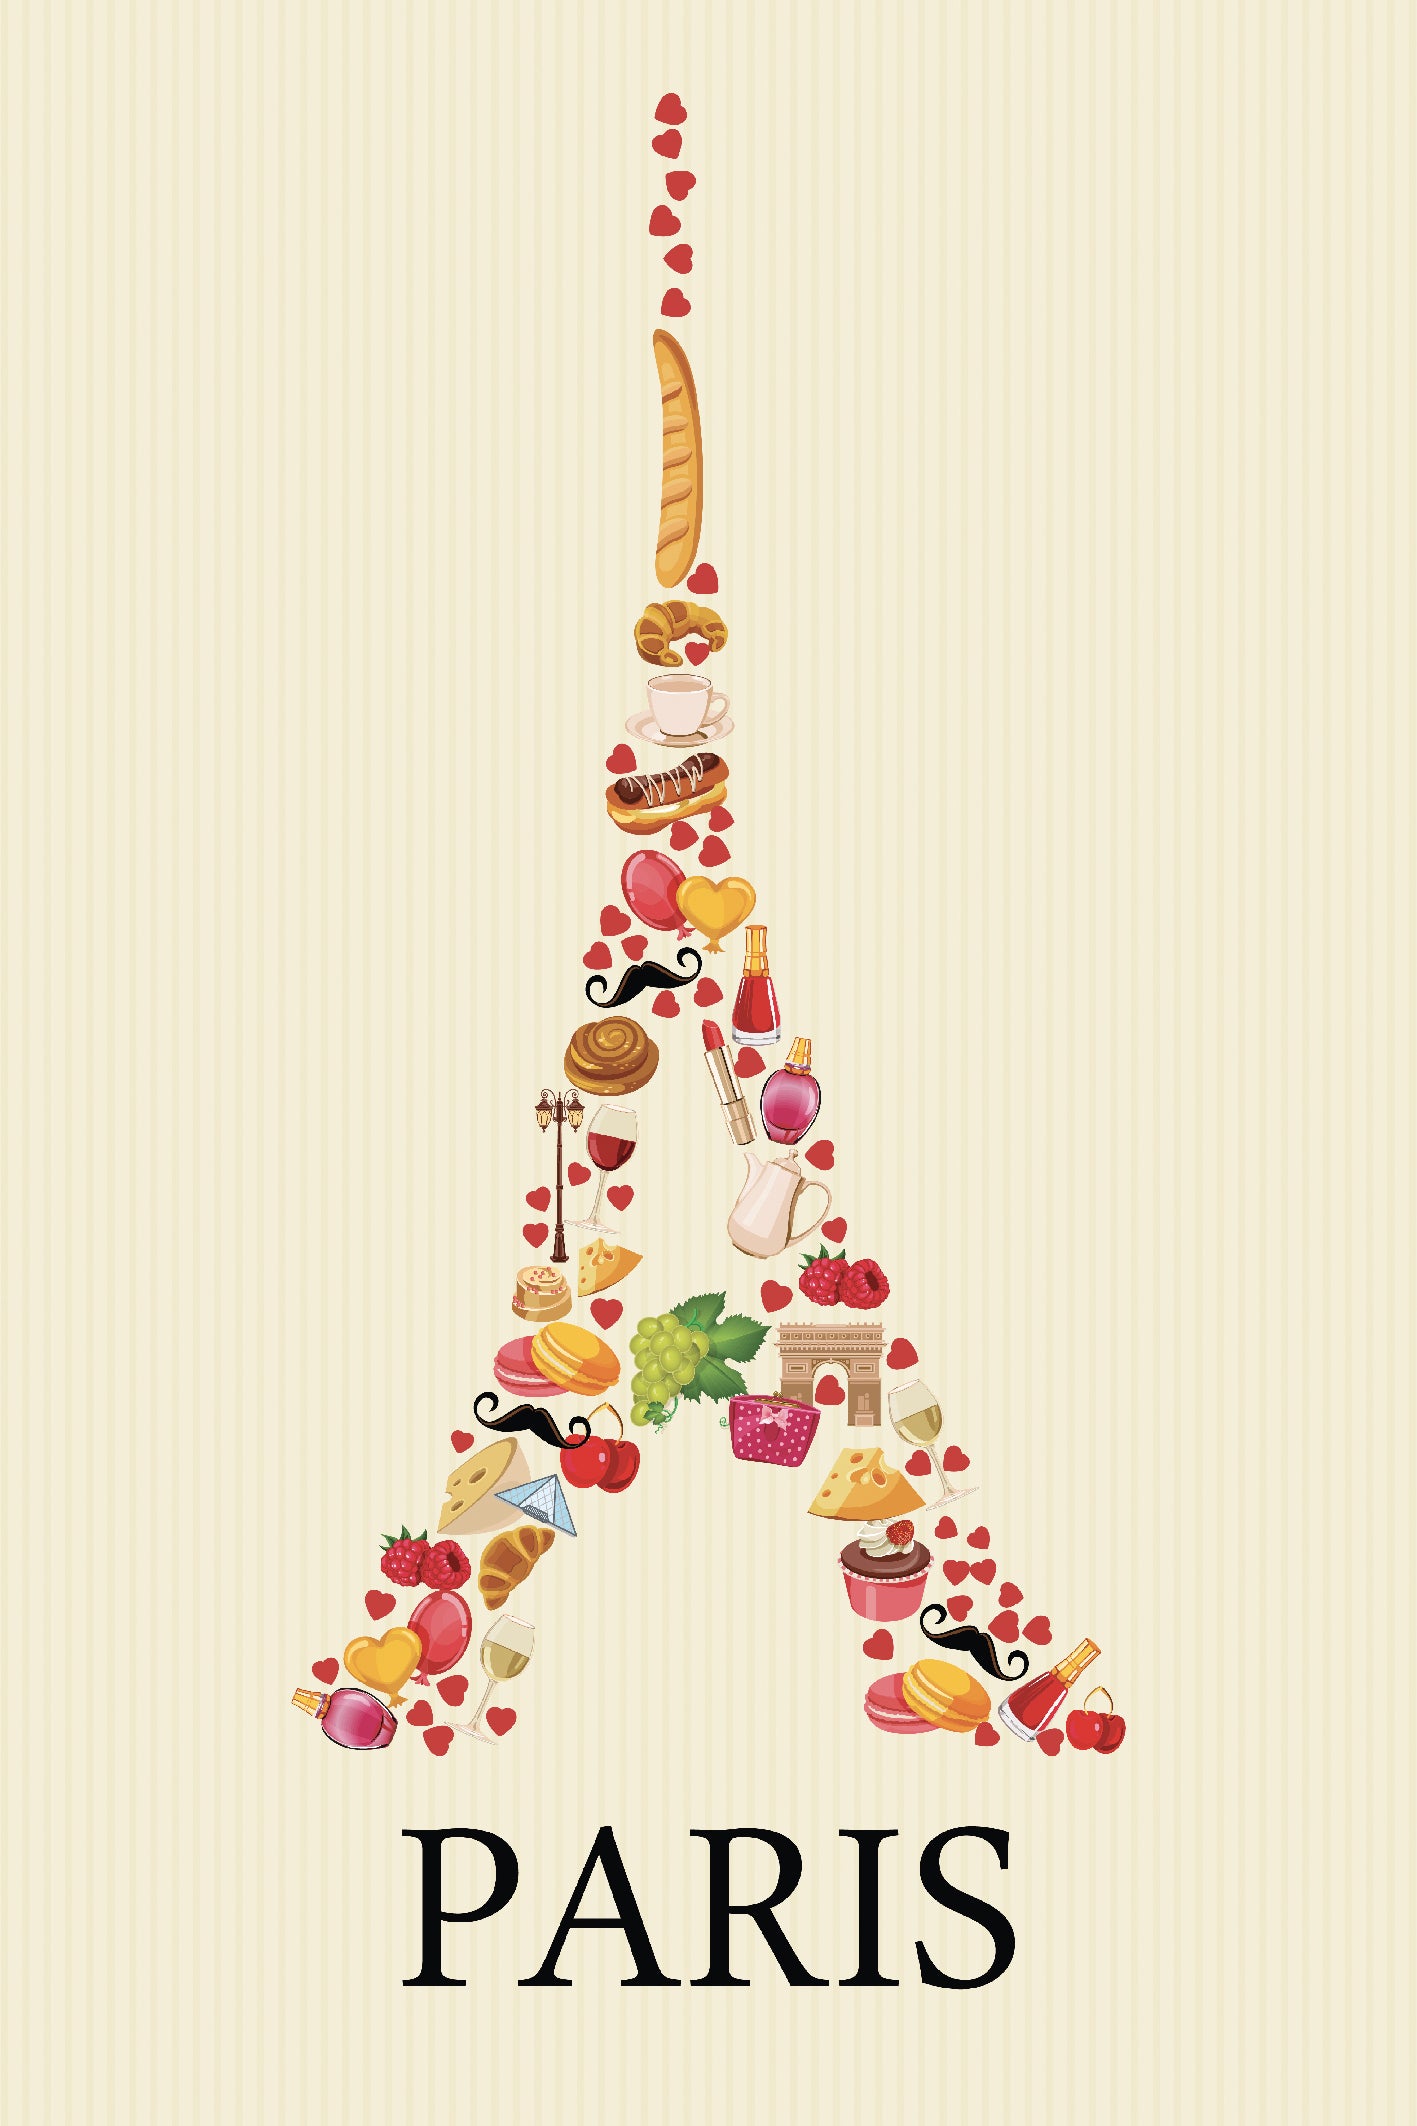 Sur un fond jaune pastel, ce tableau de cuisine est un véritable hommage à la gastronomie française. On y retrouve des dizaines d'illustrations de patisseries, de viennoiseries et de monuments de Paris qui s'assemblent pour former une Tour Eiffel. Cette œuvre colorée et délicate 